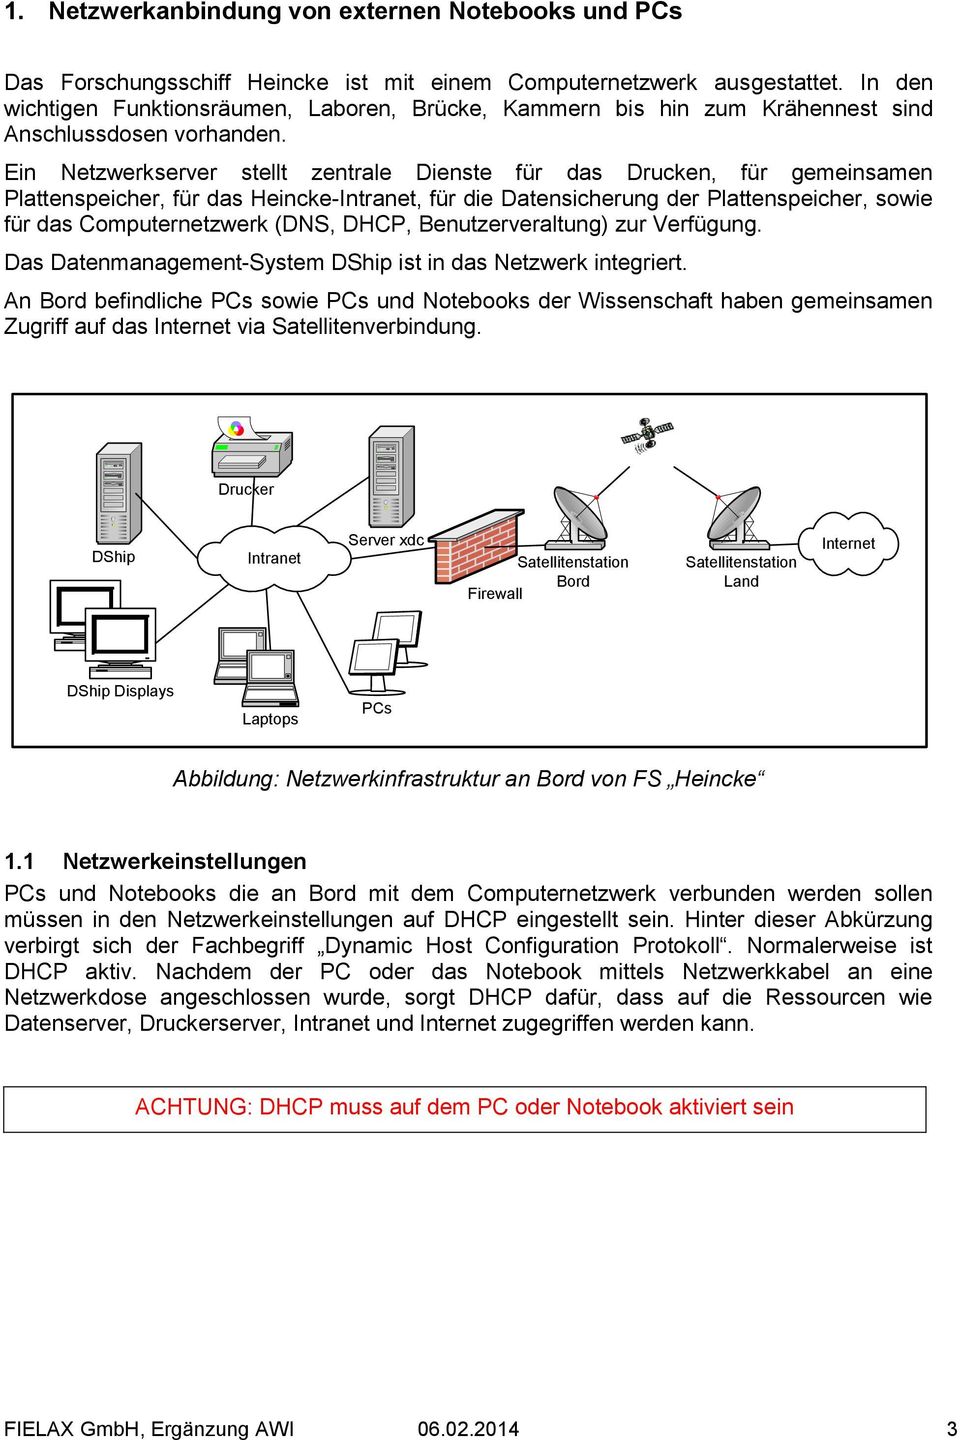 Ein Netzwerkserver stellt zentrale Dienste für das Drucken, für gemeinsamen Plattenspeicher, für das Heincke-Intranet, für die Datensicherung der Plattenspeicher, sowie für das Computernetzwerk (DNS,